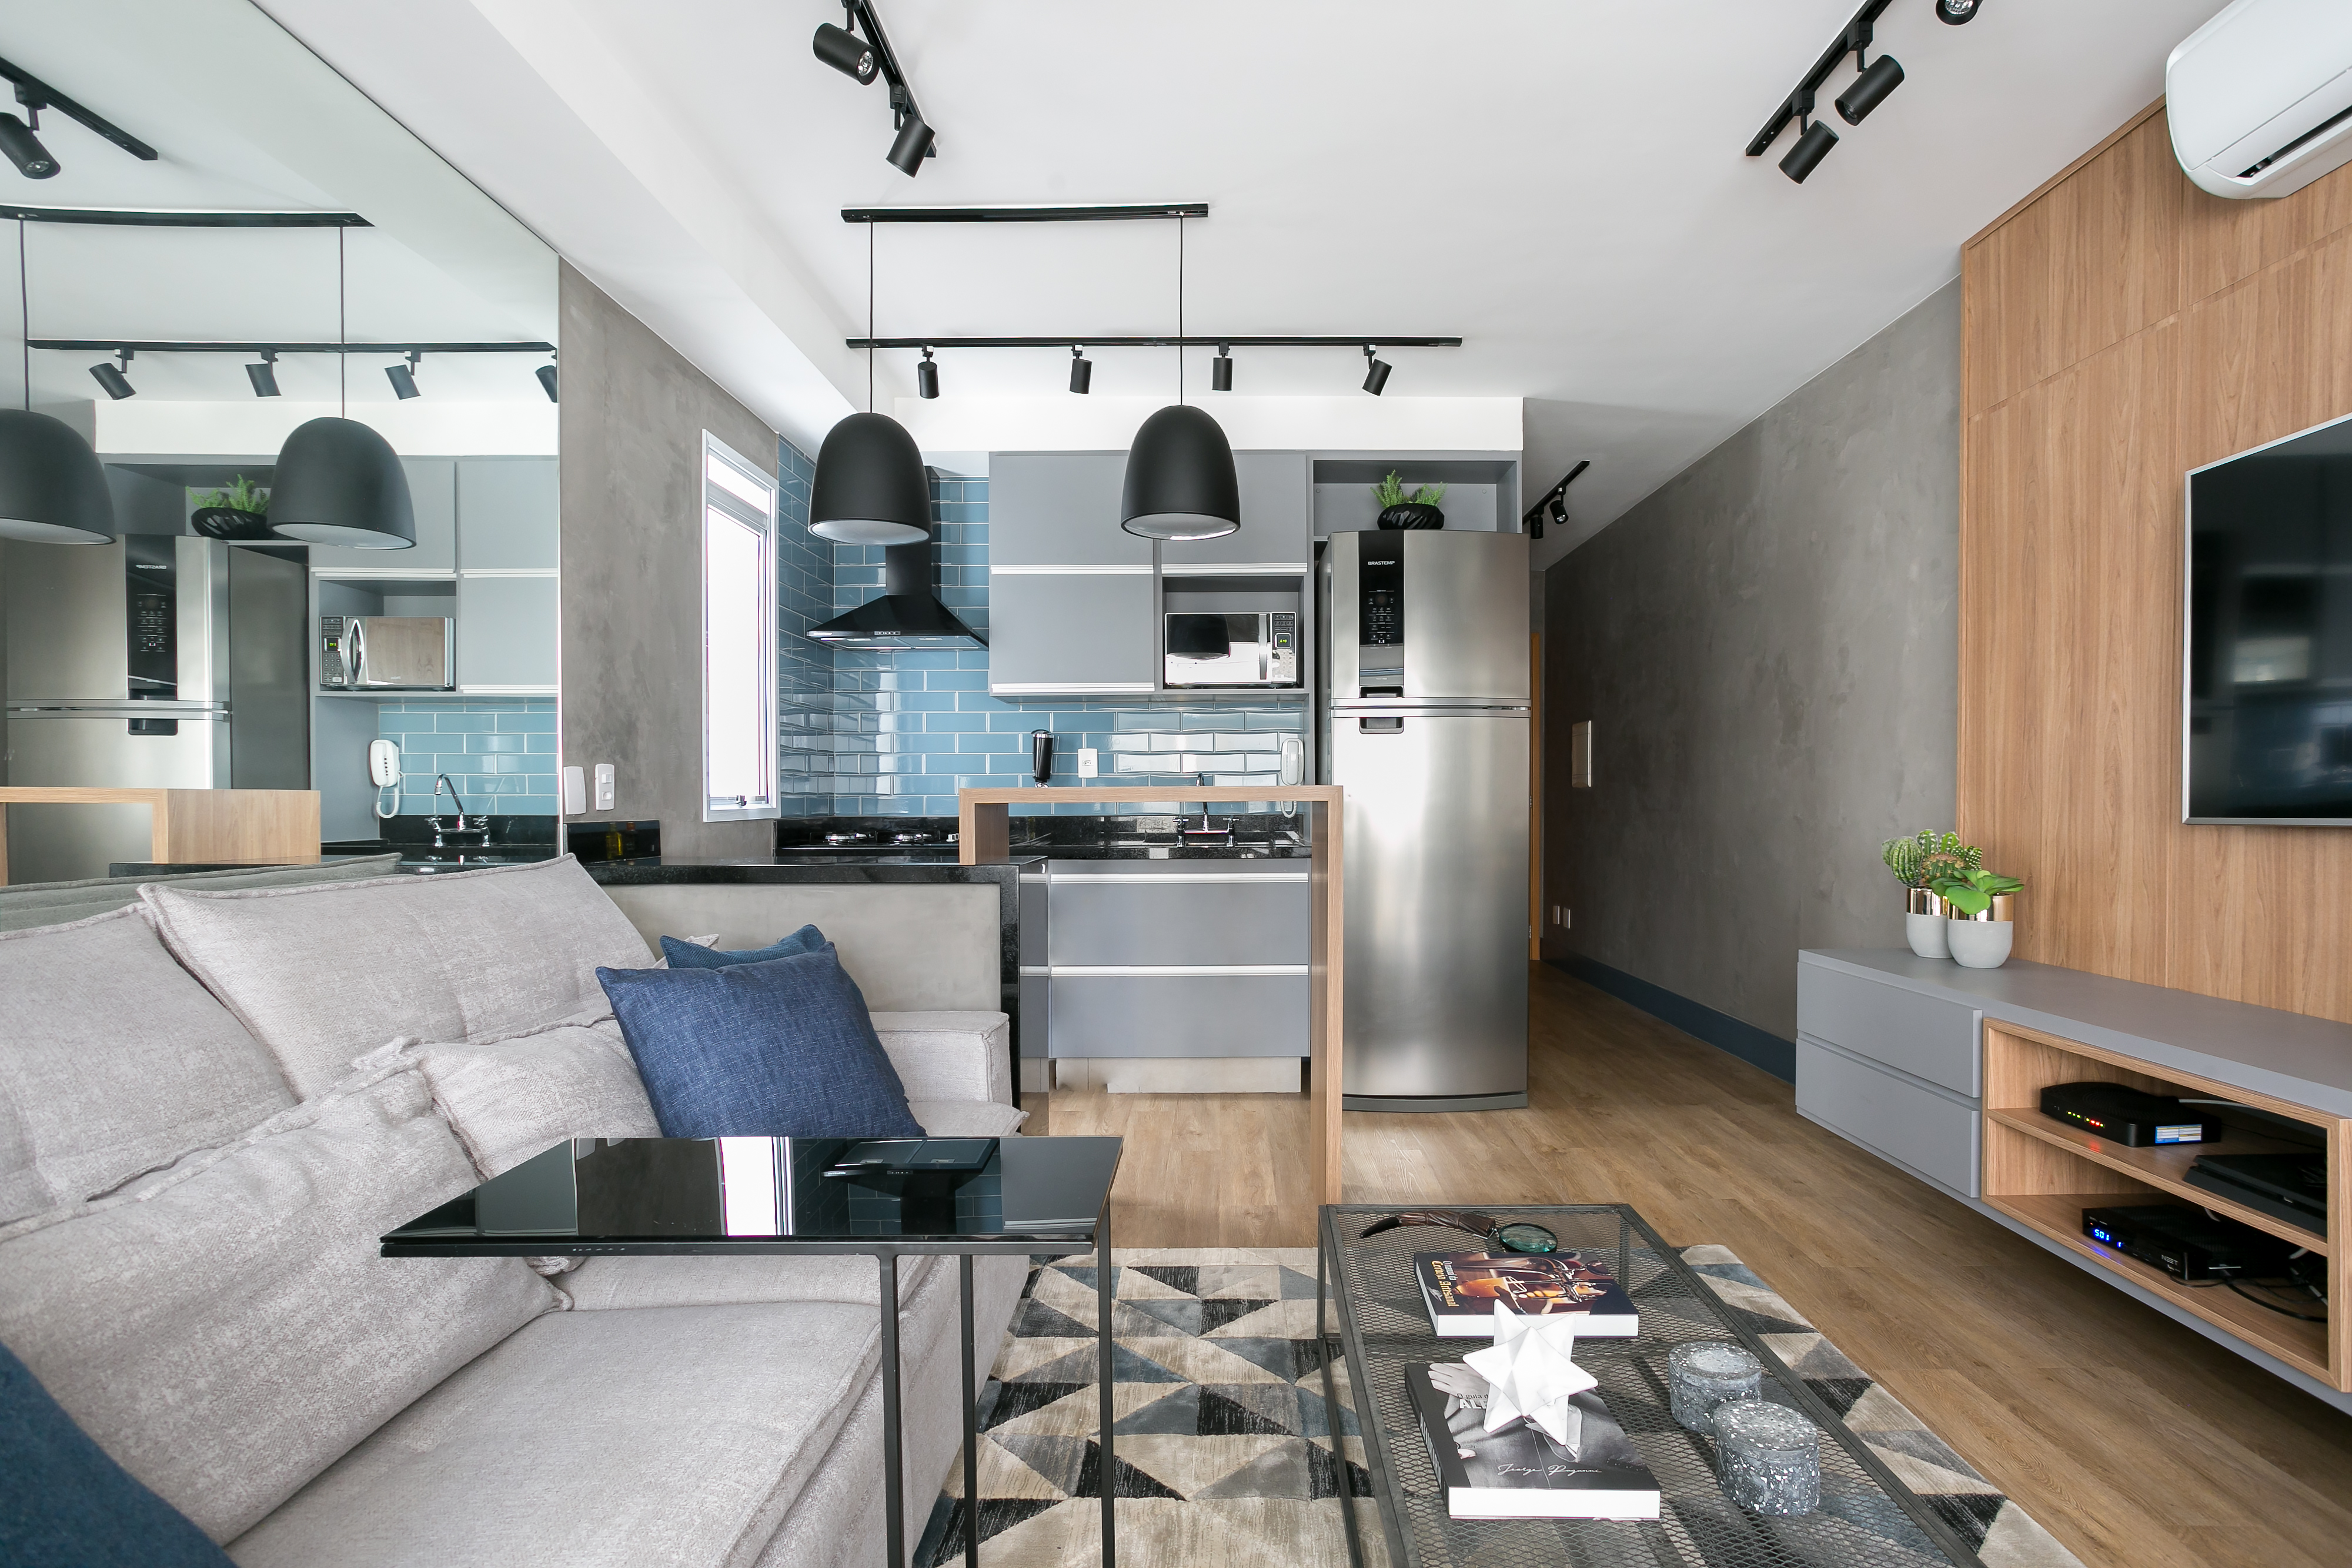 Apartamento pequeno de 43 m² com estilo industrial chique | CASA.COM.BR